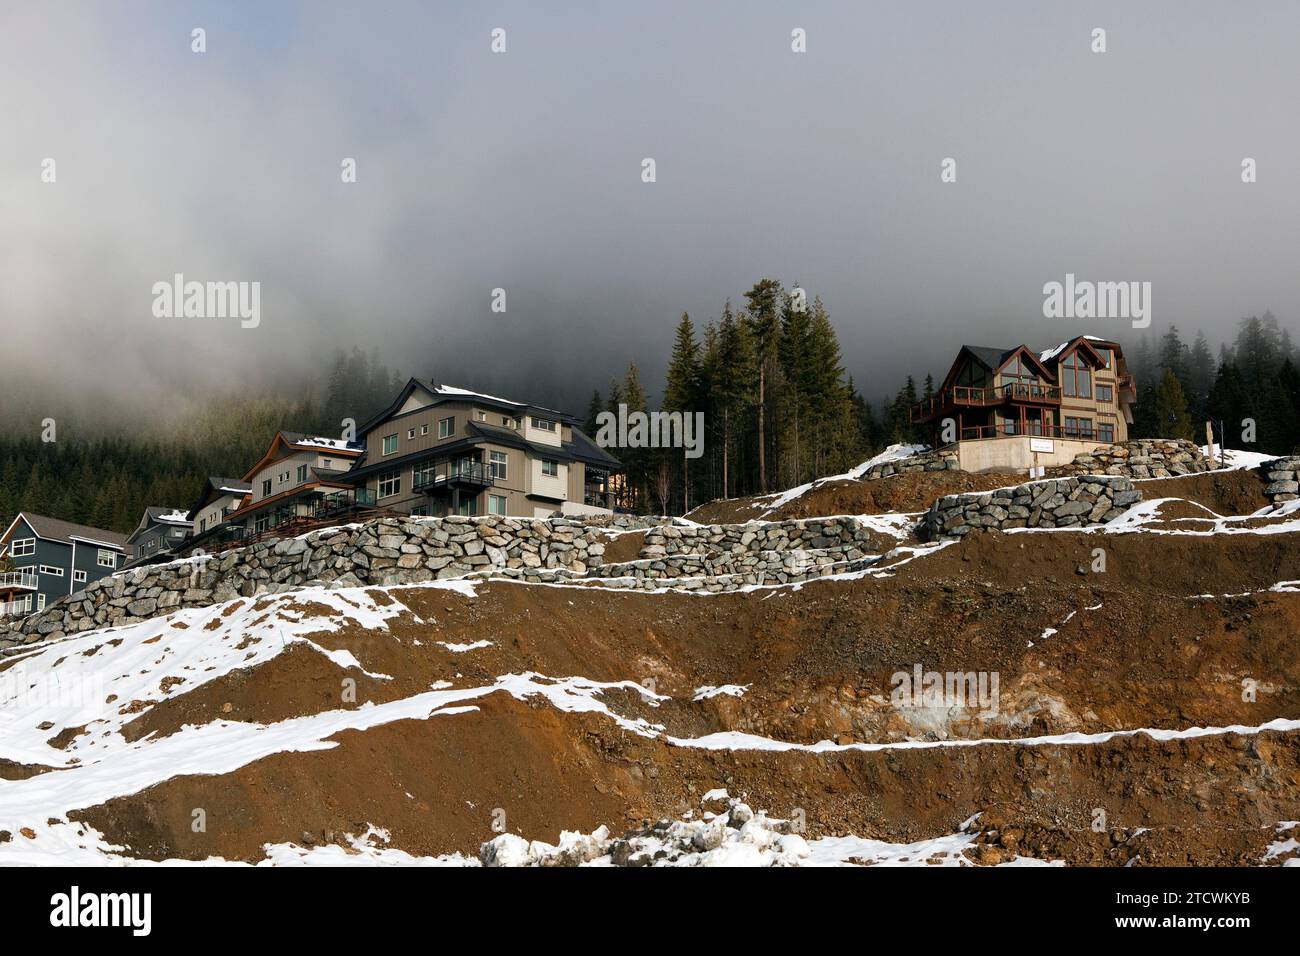 Nuove case e sgomberato lotti non sviluppati in una nuova suddivisione sul versante inferiore di Rainbow Mountain, Whistler Blackcomb, British Columbia, Canada. Foto Stock